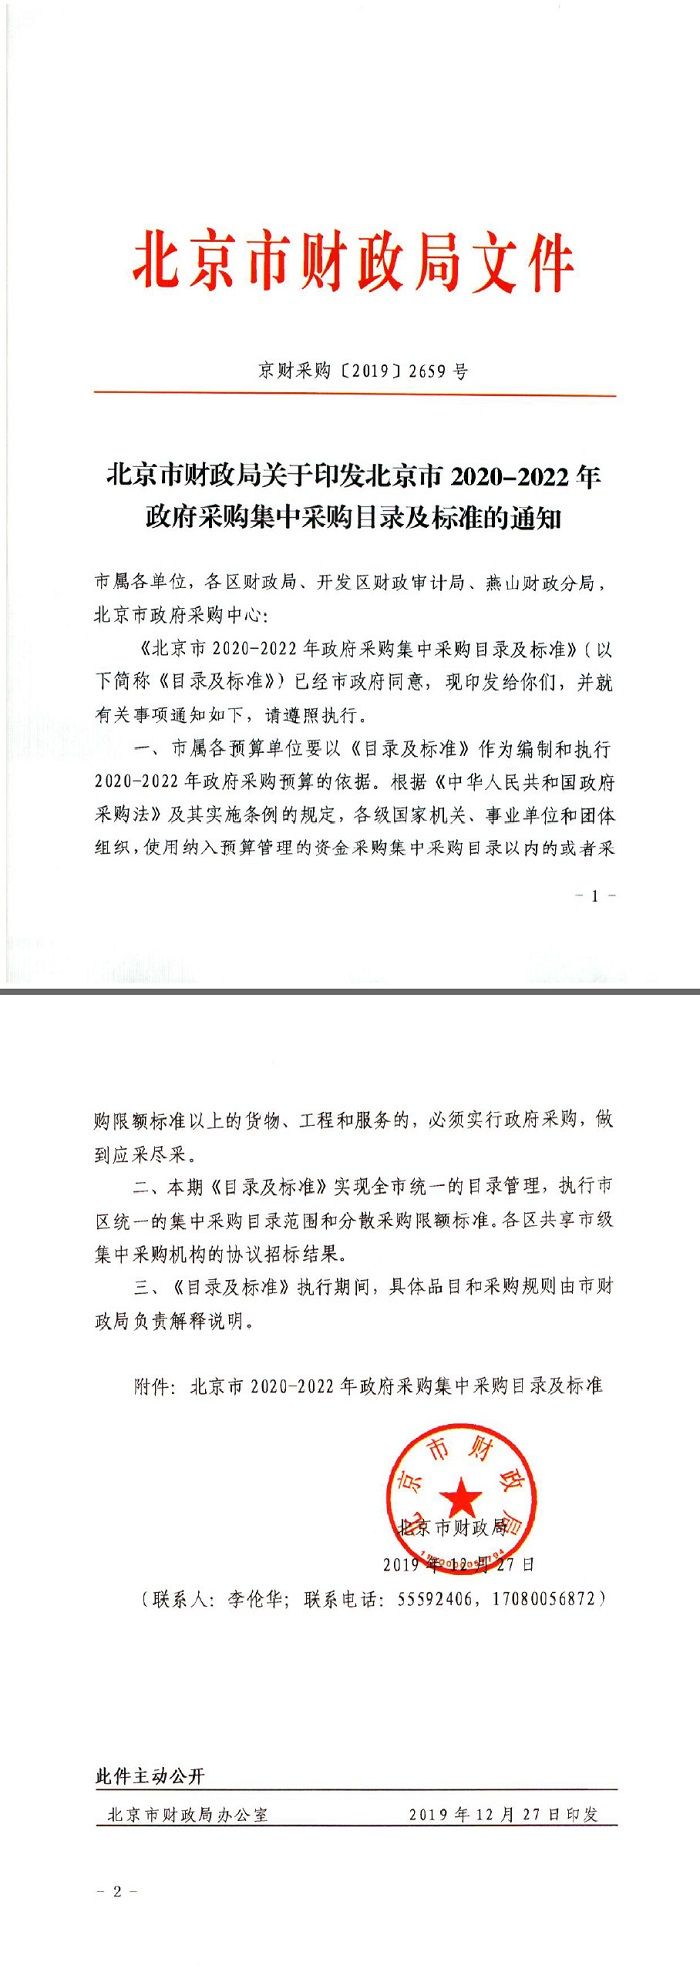 北京市财政局关于印发北京市2020-2022年政府采购集中采购目录及标准的通知